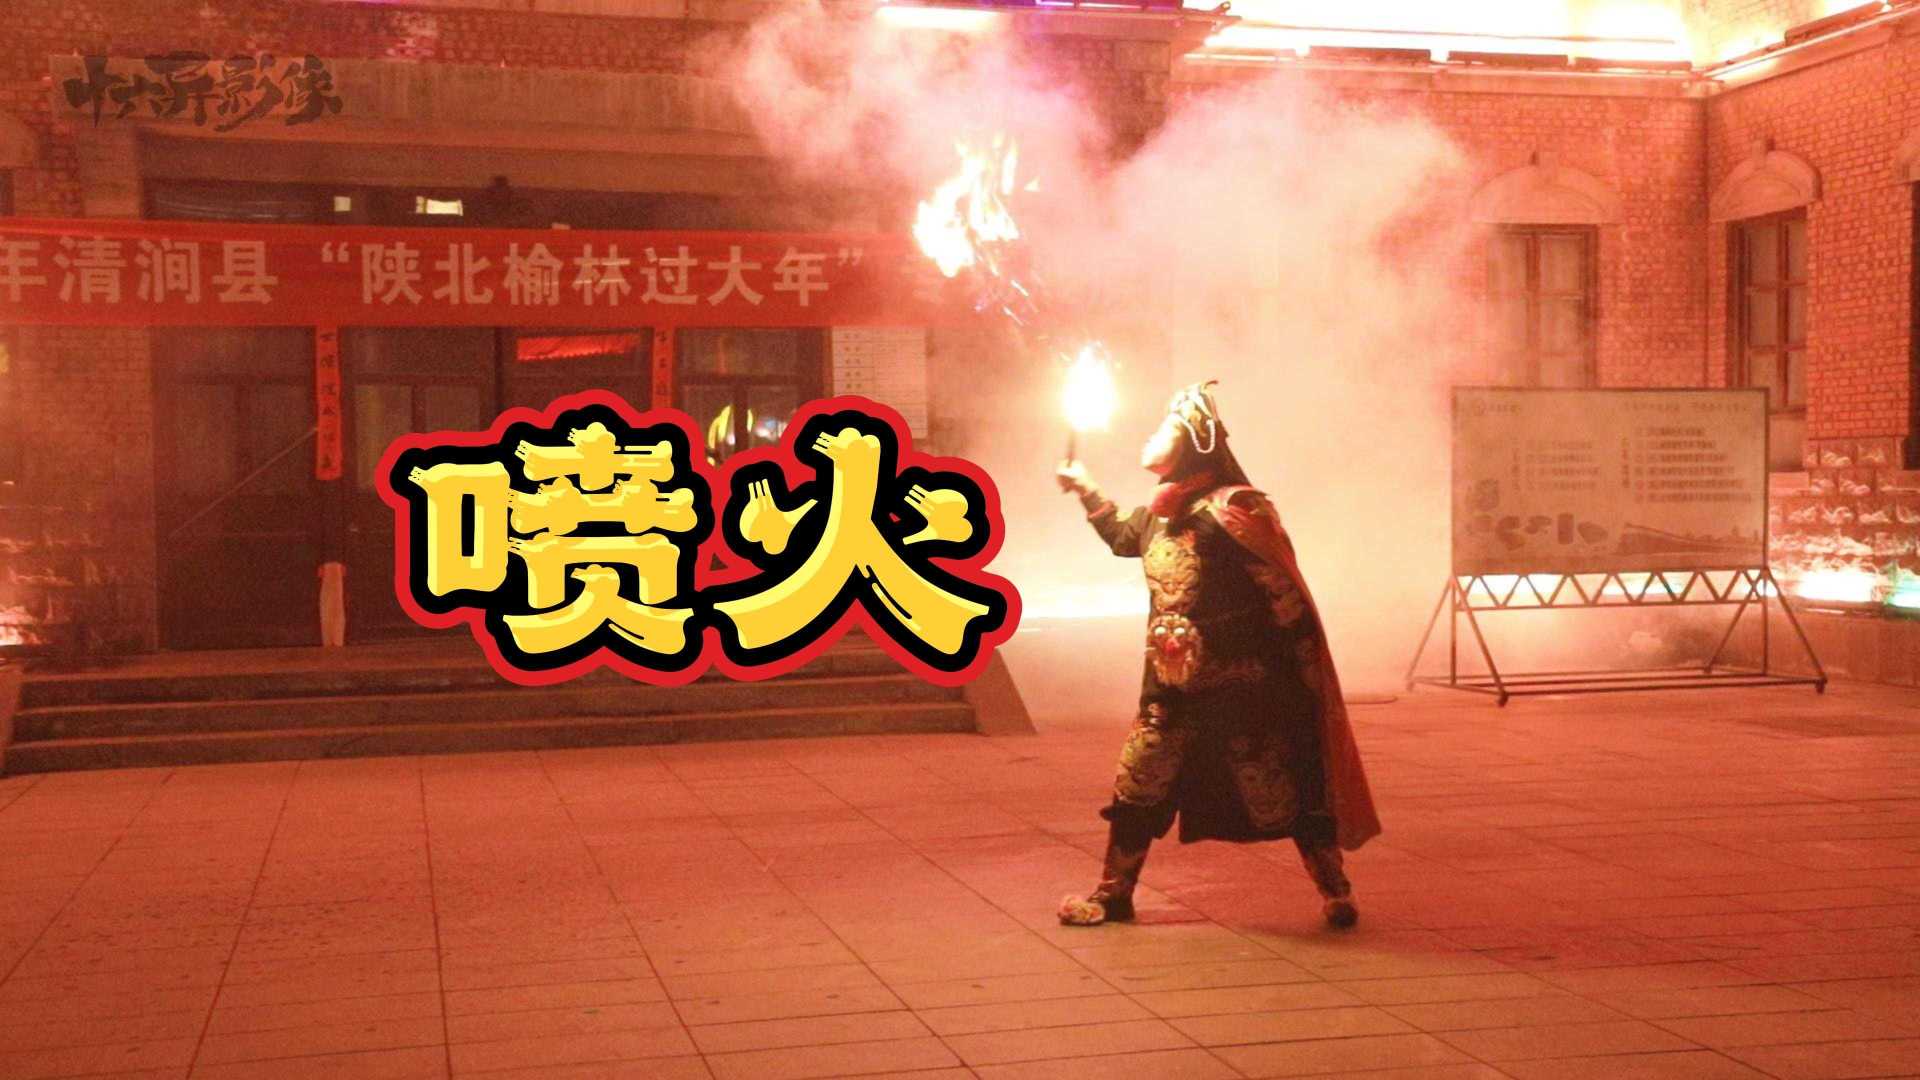 十六异【拍客影像】陕北过大年精彩演出中国传统神技喷火绝活